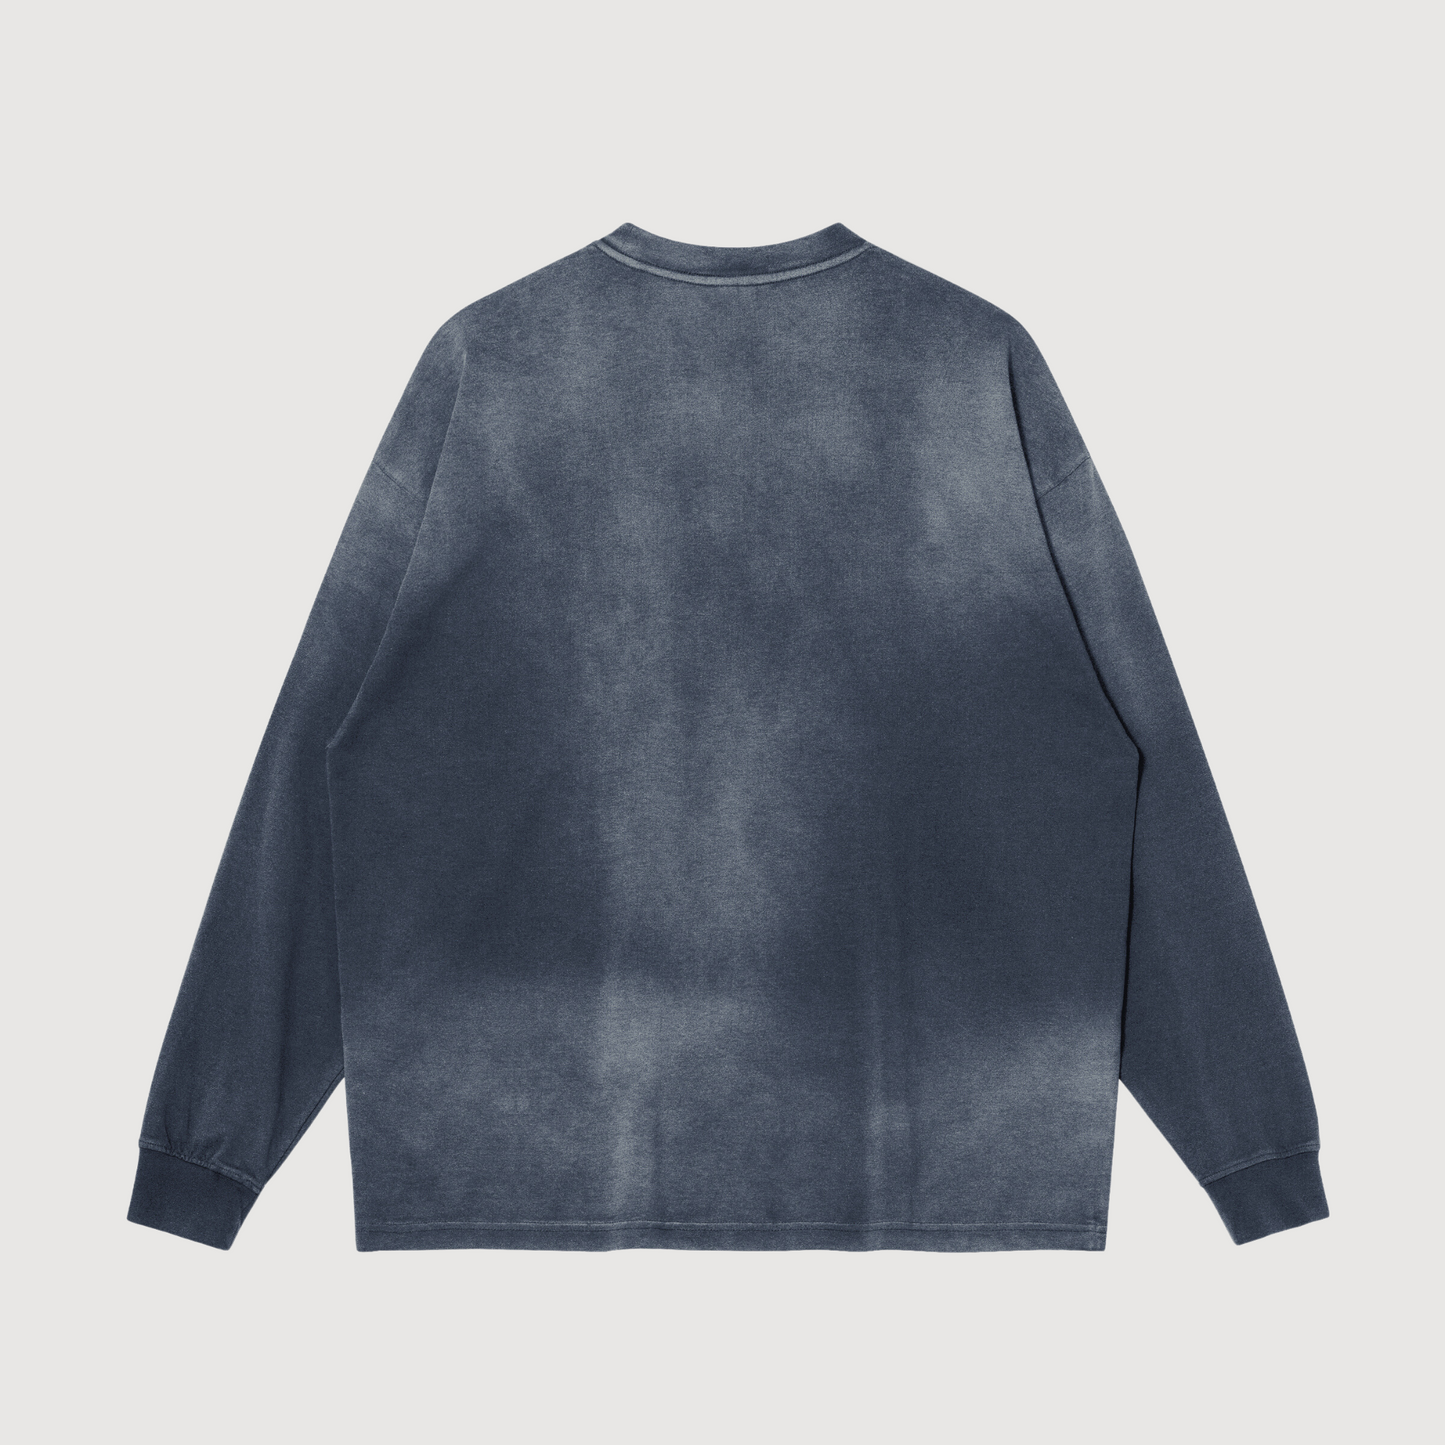 grey oversized crewneck sweatshirt luxury streetwear